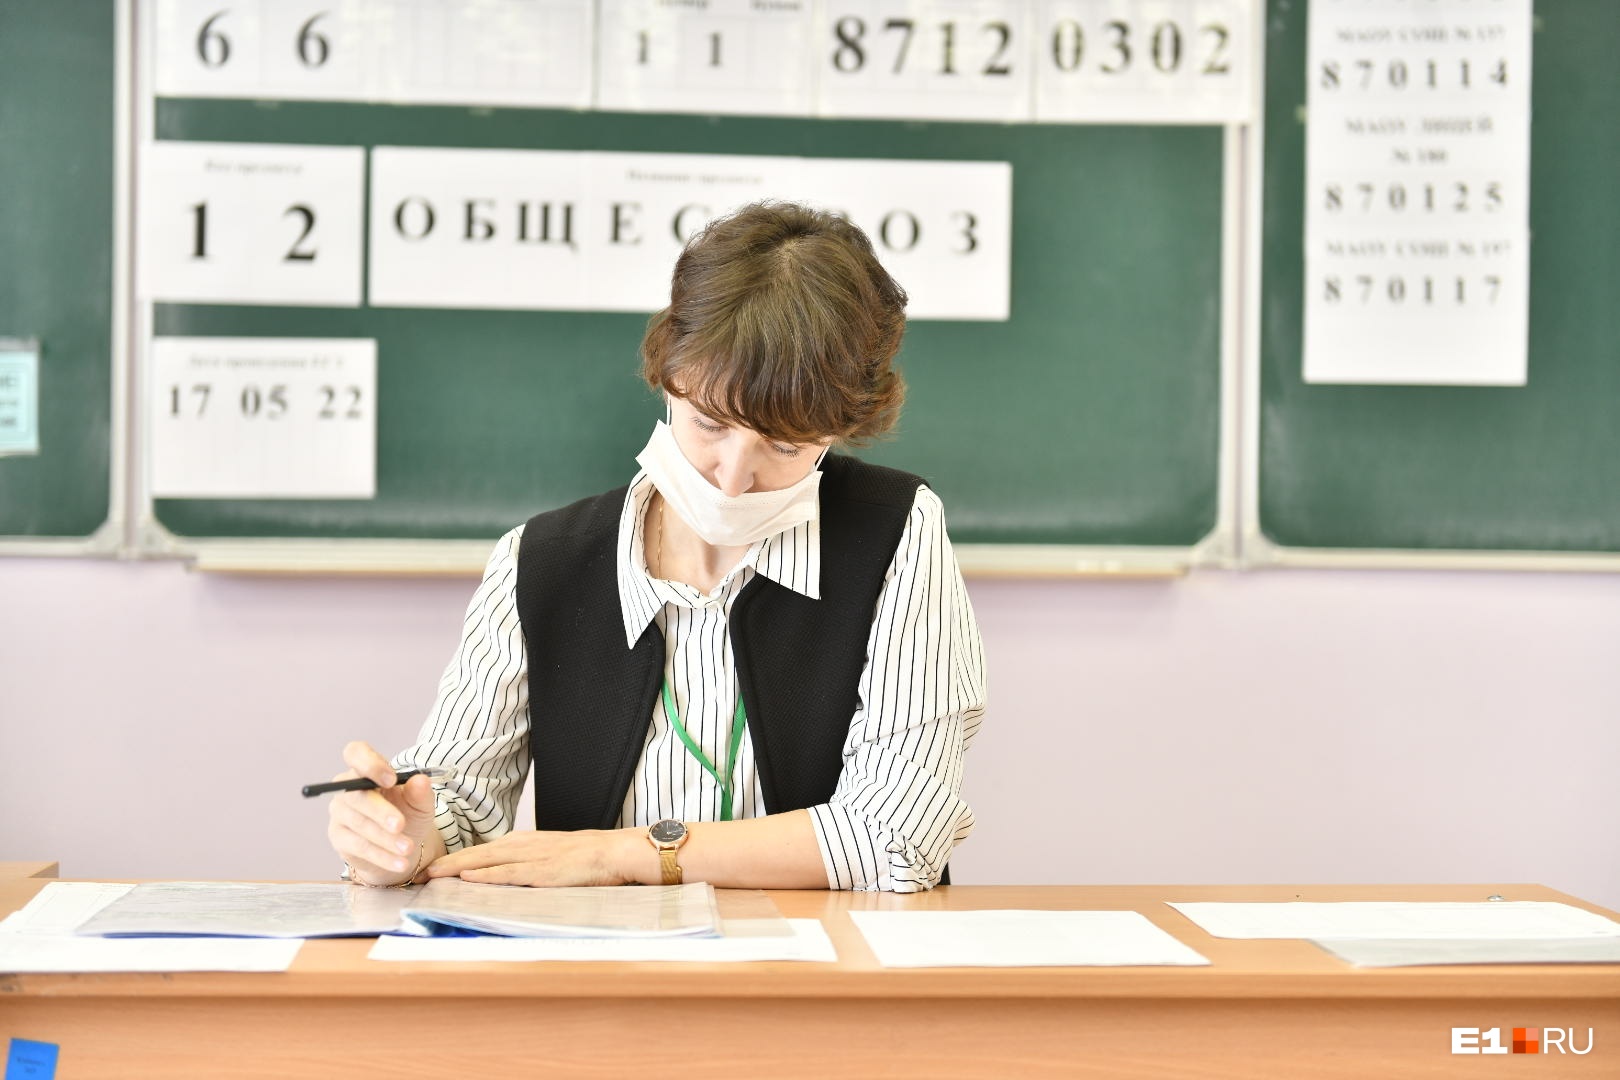 Чипсы и сухарики под запретом! В школах Екатеринбурга прошли проверки перед ЕГЭ